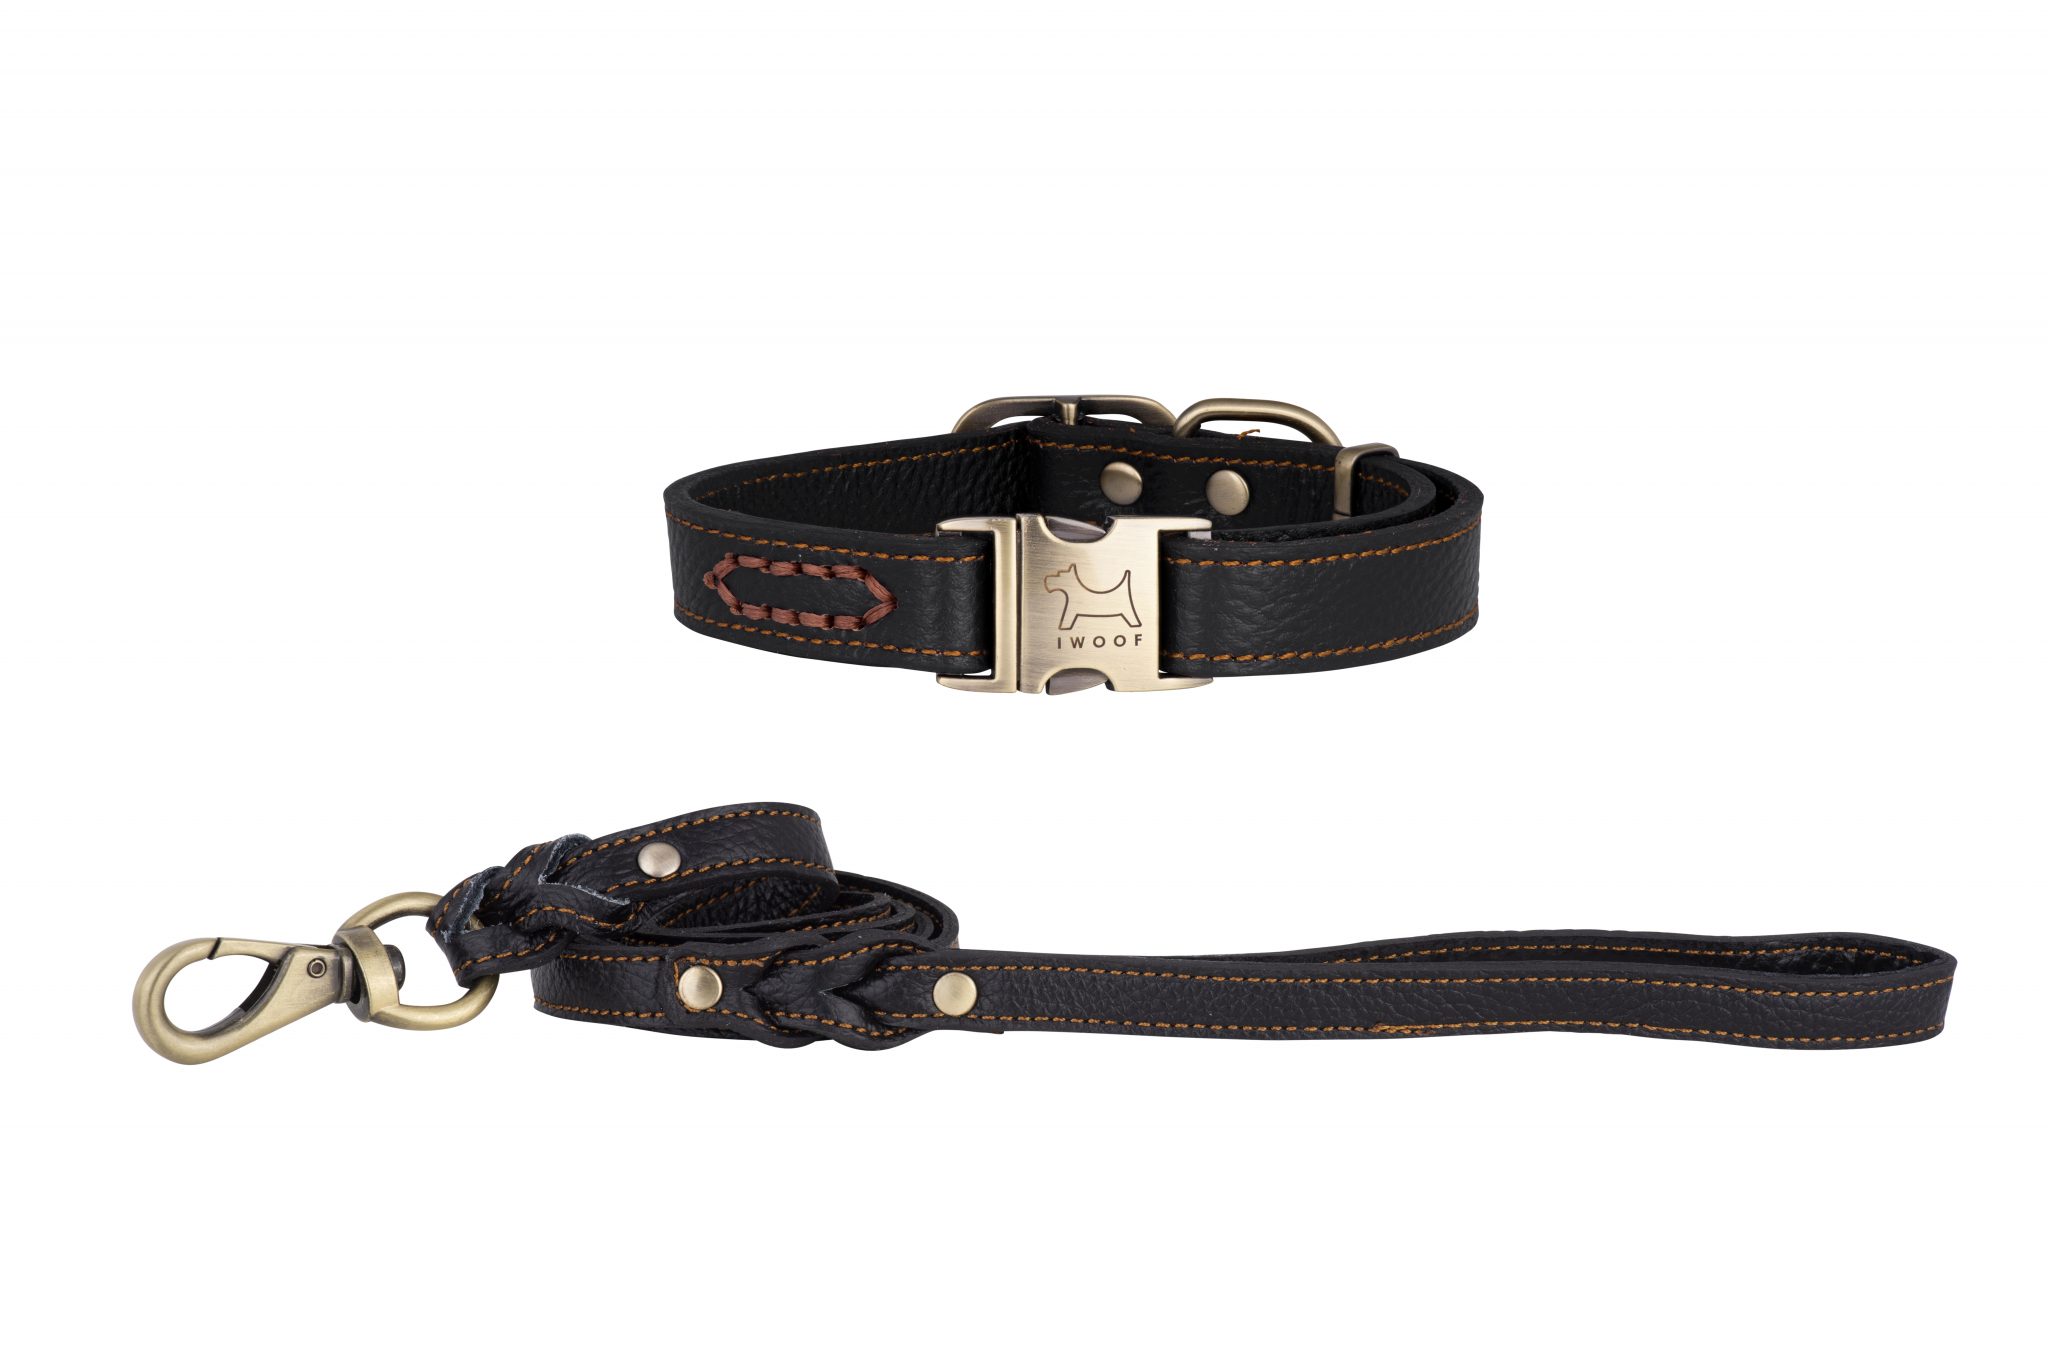 ROYAL Designer Dog Collar and Lead set in Black